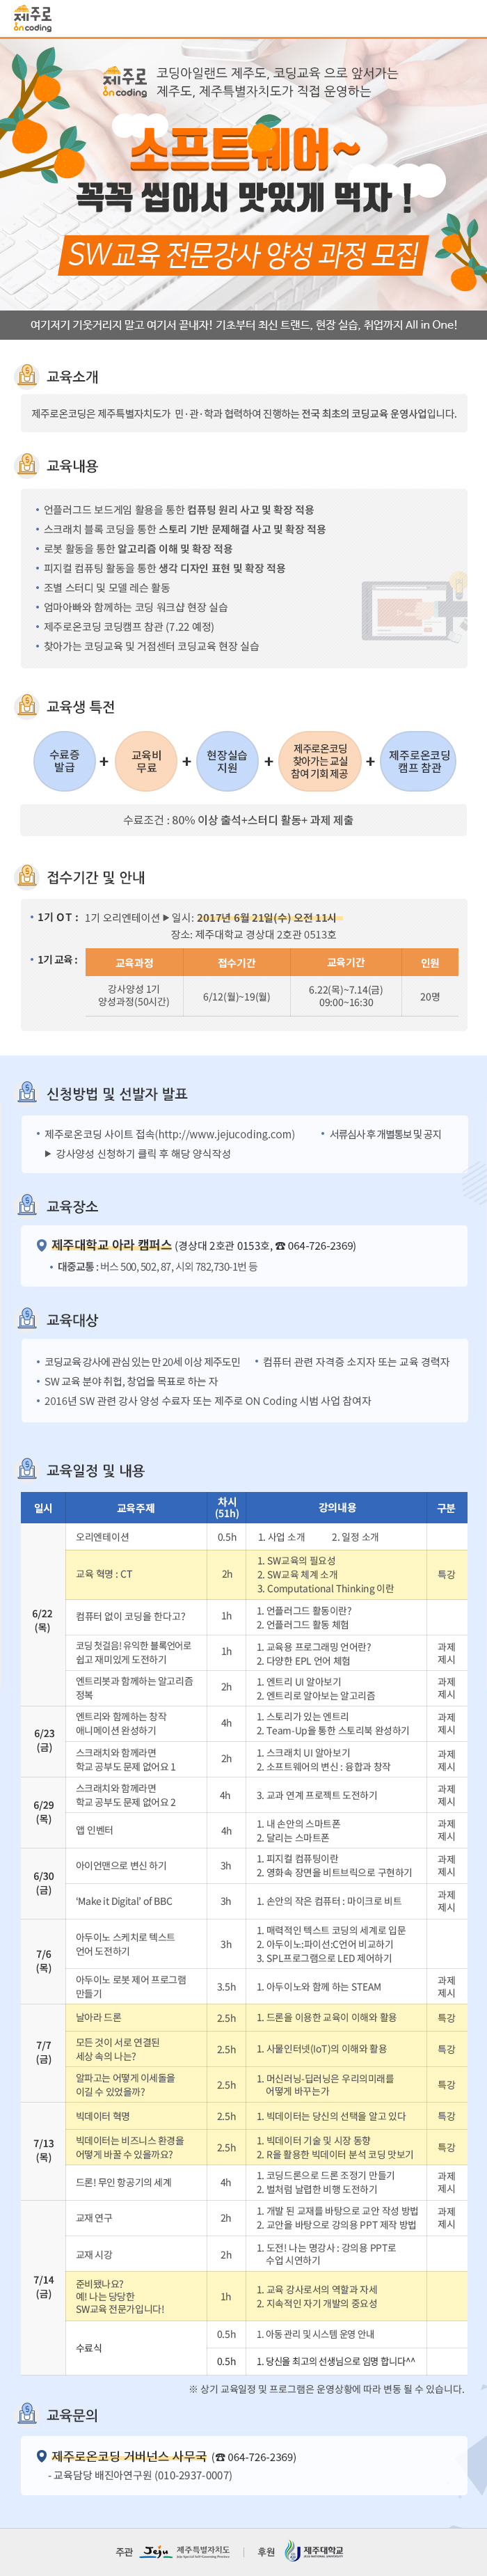 [모집종료]SW교육 전문강사양성과정모집 홍보